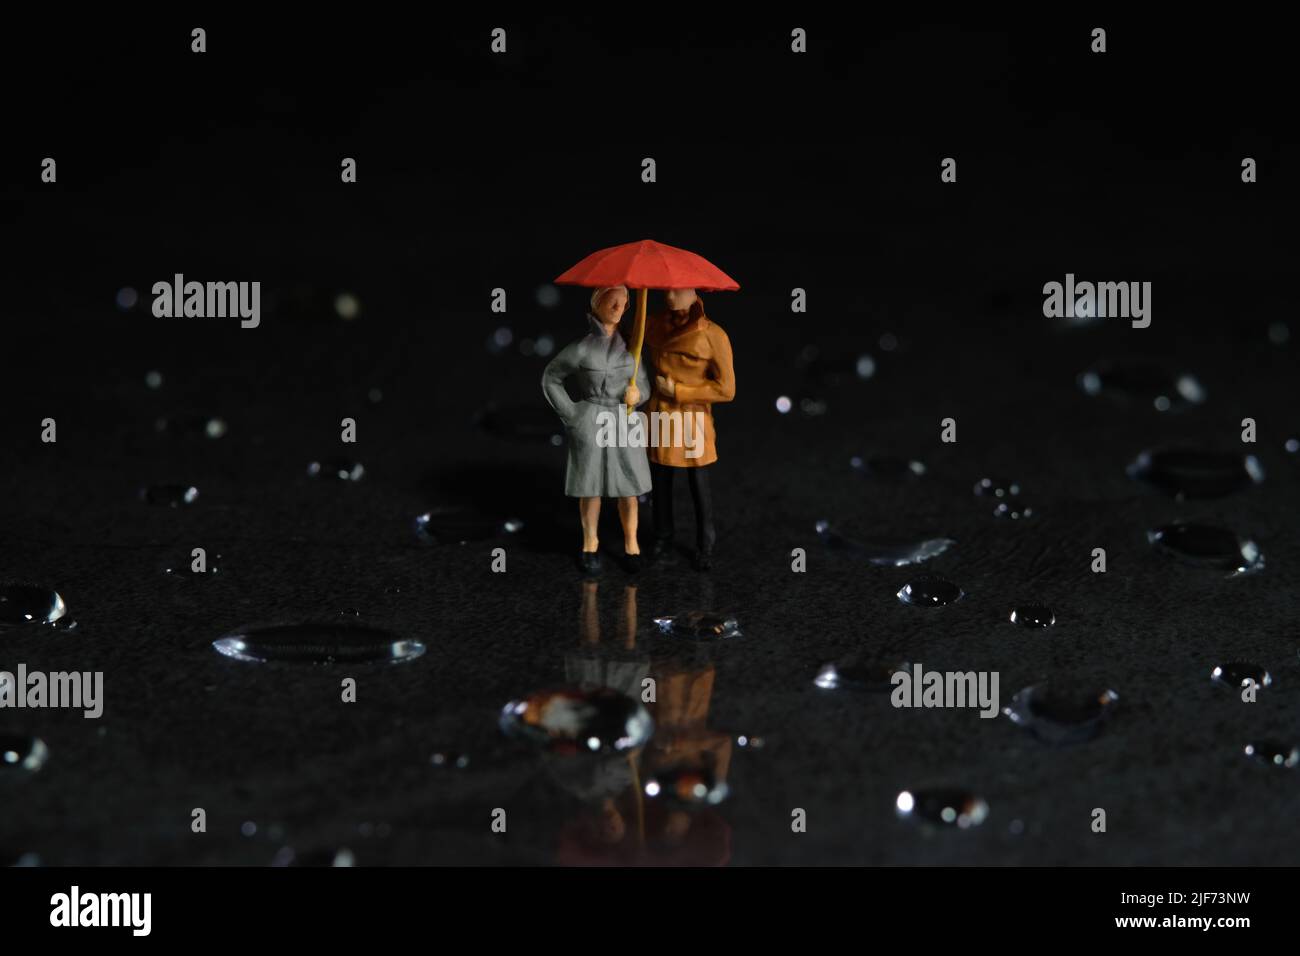 Miniatur Menschen Spielzeug Figur Fotografie. Ein Paar, das einen Sonnenschirm benutzt, läuft auf dem Boden voller Tropfen. Dunkler wolkig Himmel Hintergrund. Bildfoto Stockfoto